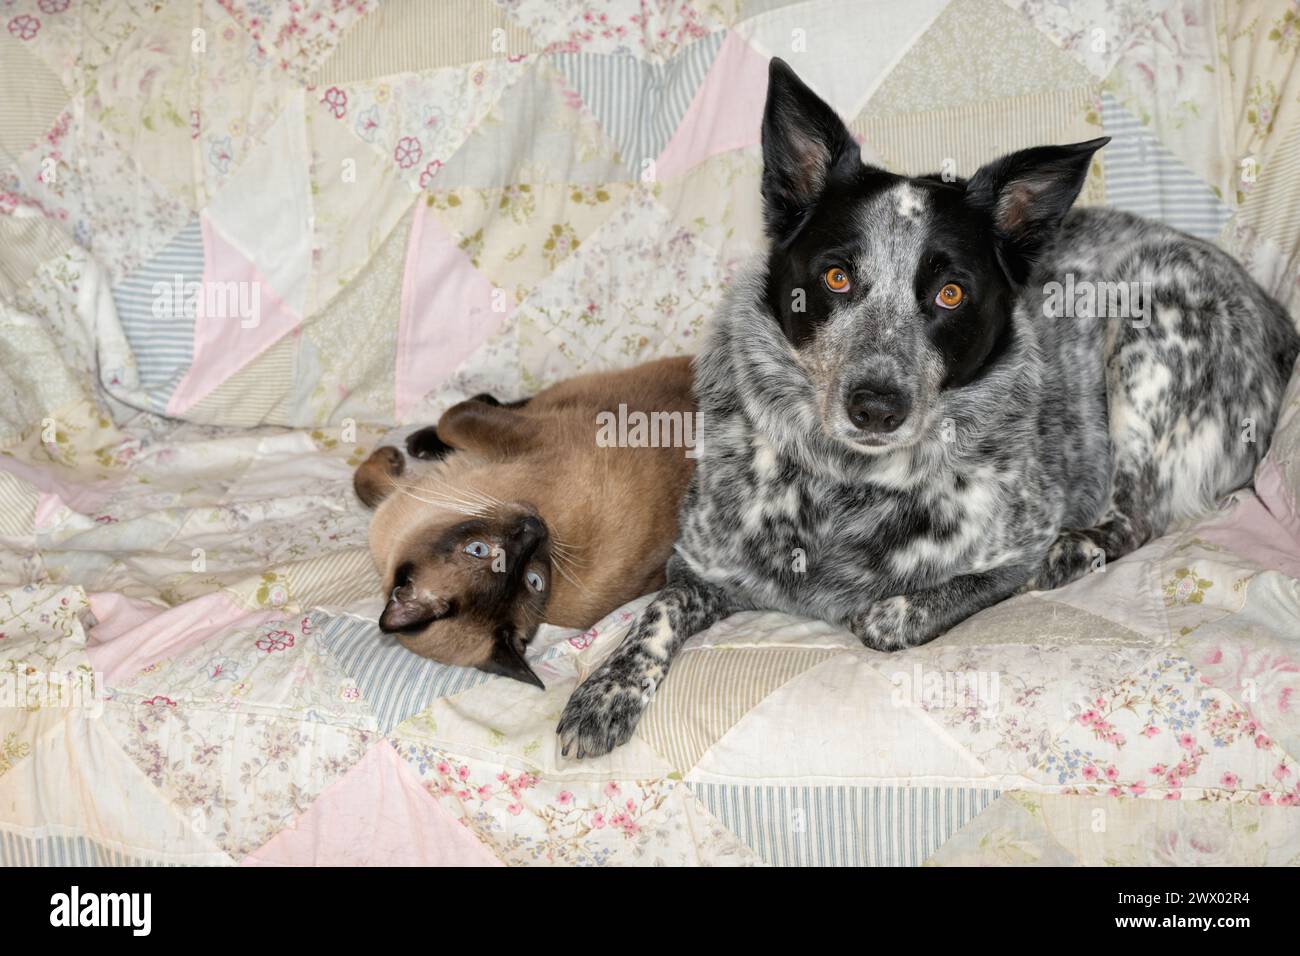 Schwarz-weiß gefleckter Hund und eine siamesische Katze liegen bequem nebeneinander auf einer Couch Stockfoto